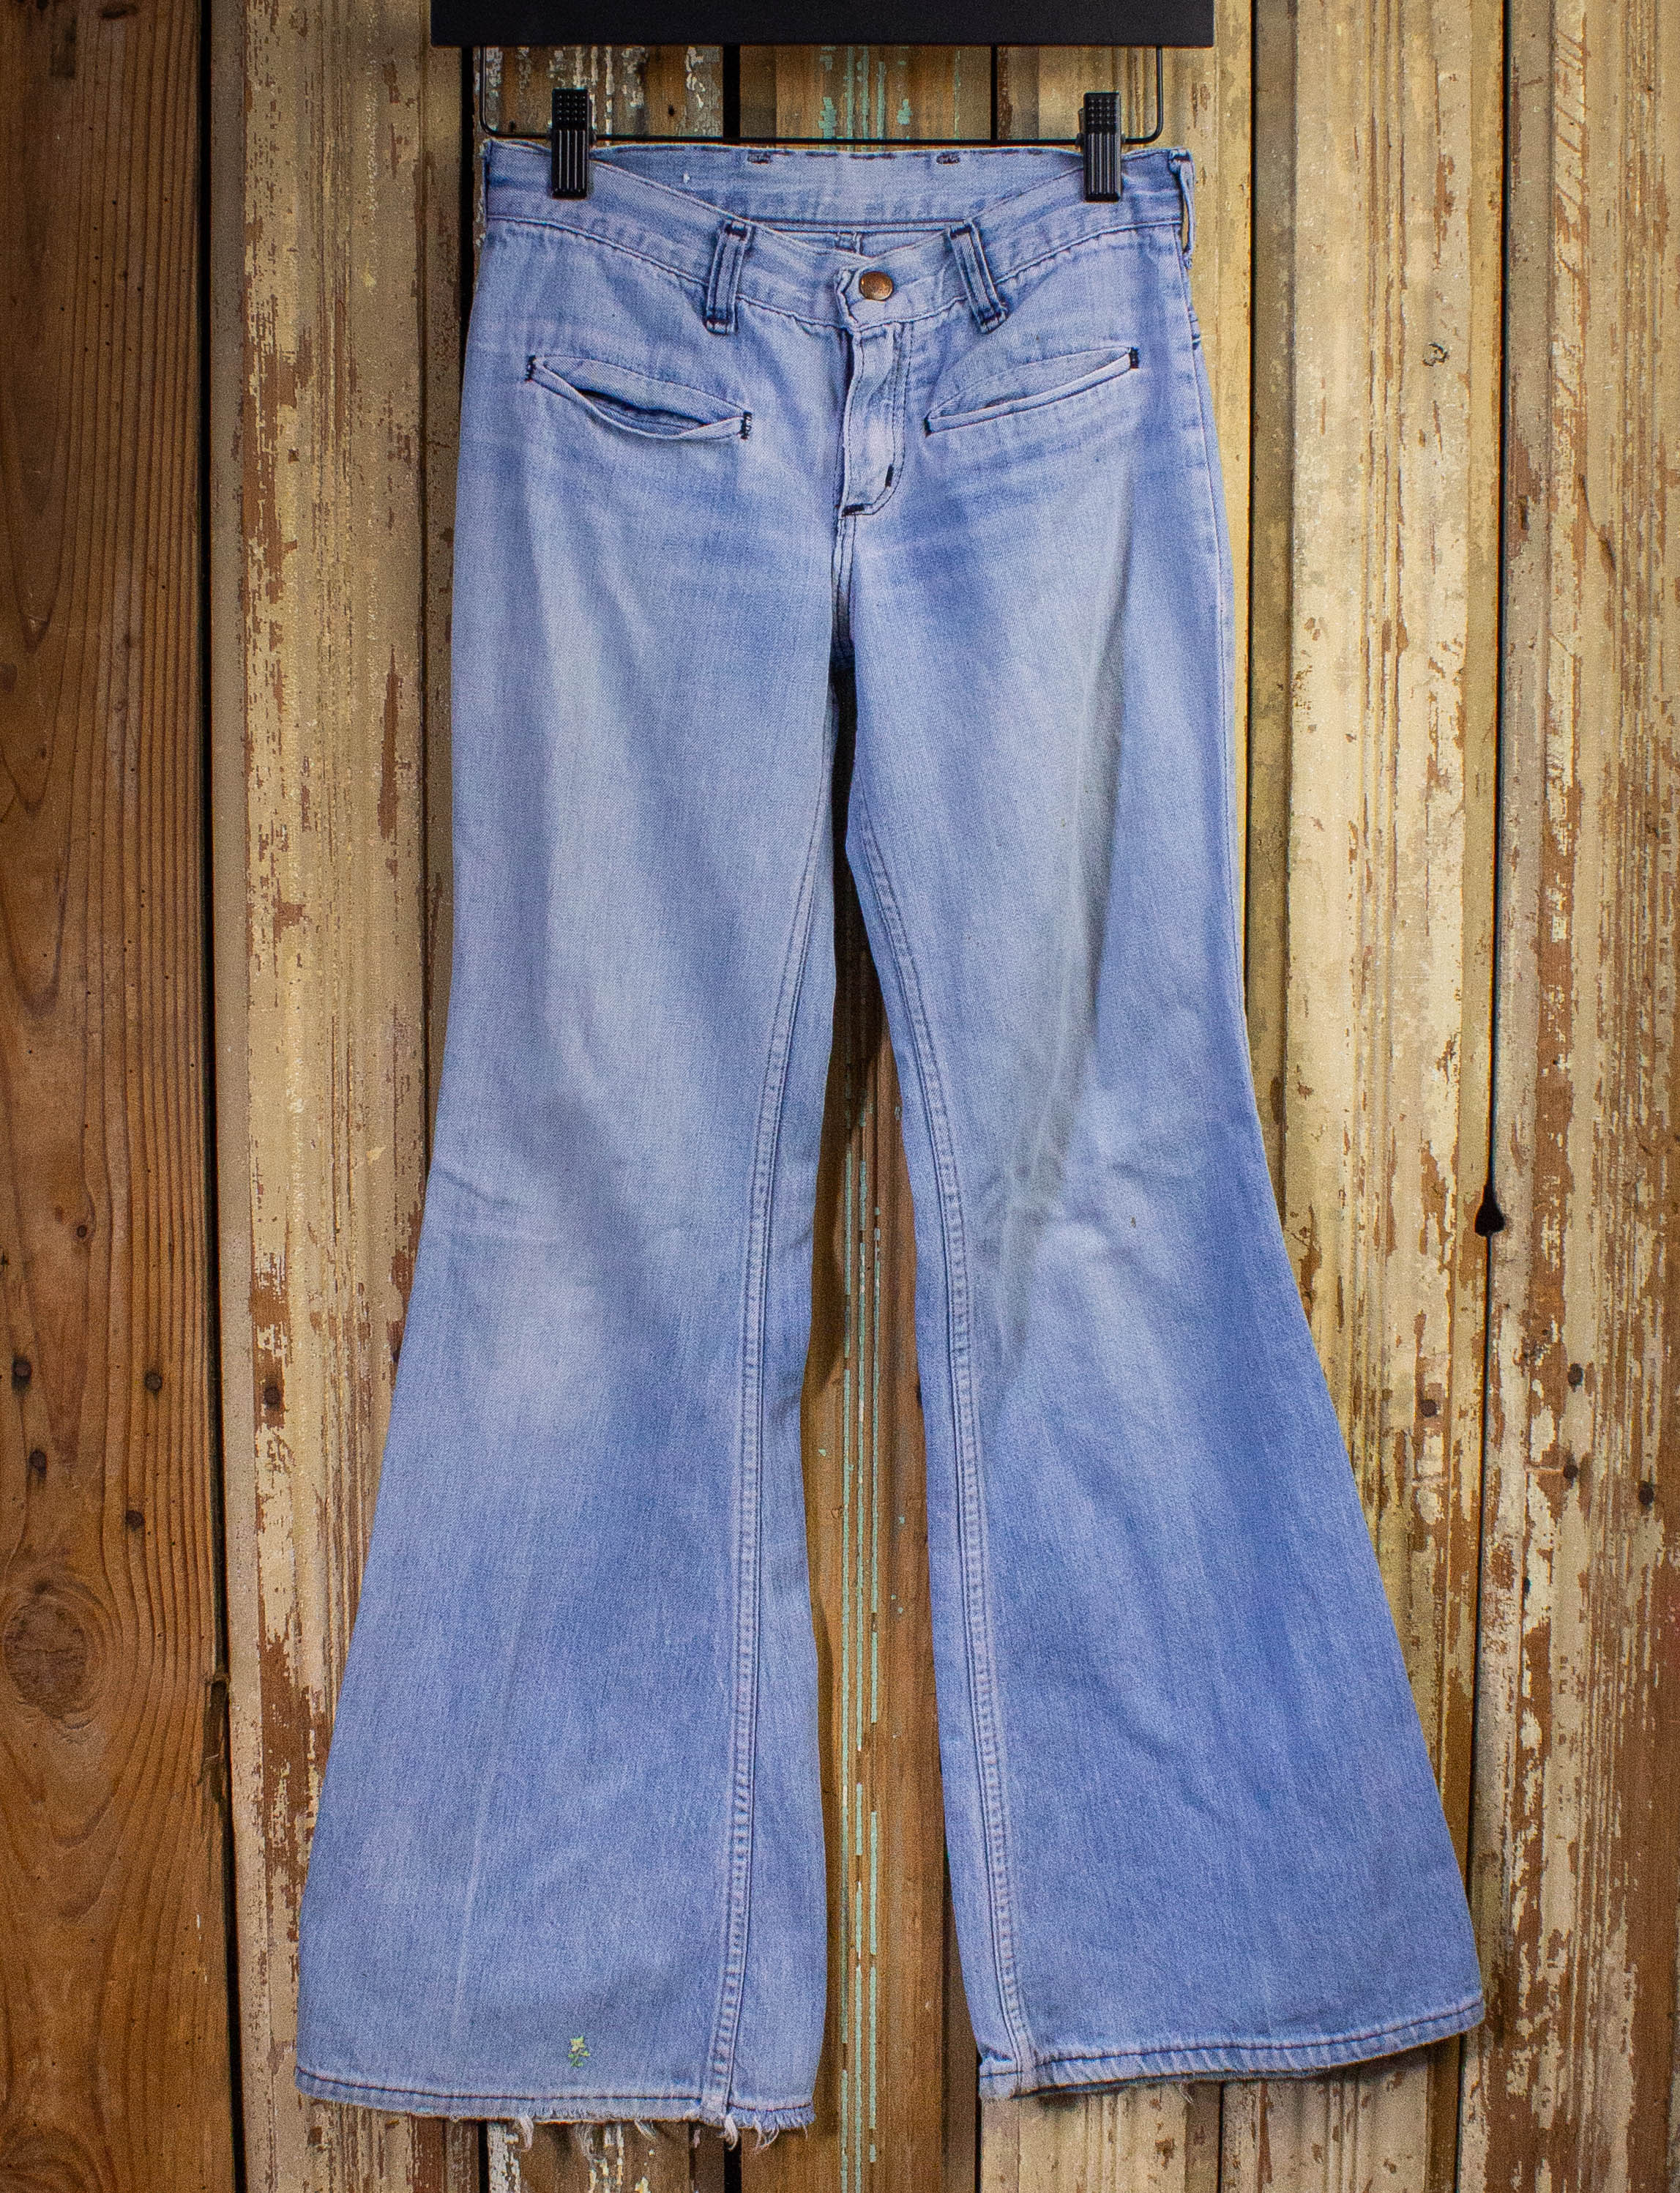 Vintage Wrangler Bell Bottom Denim Jeans 70s Light Wash 26x28